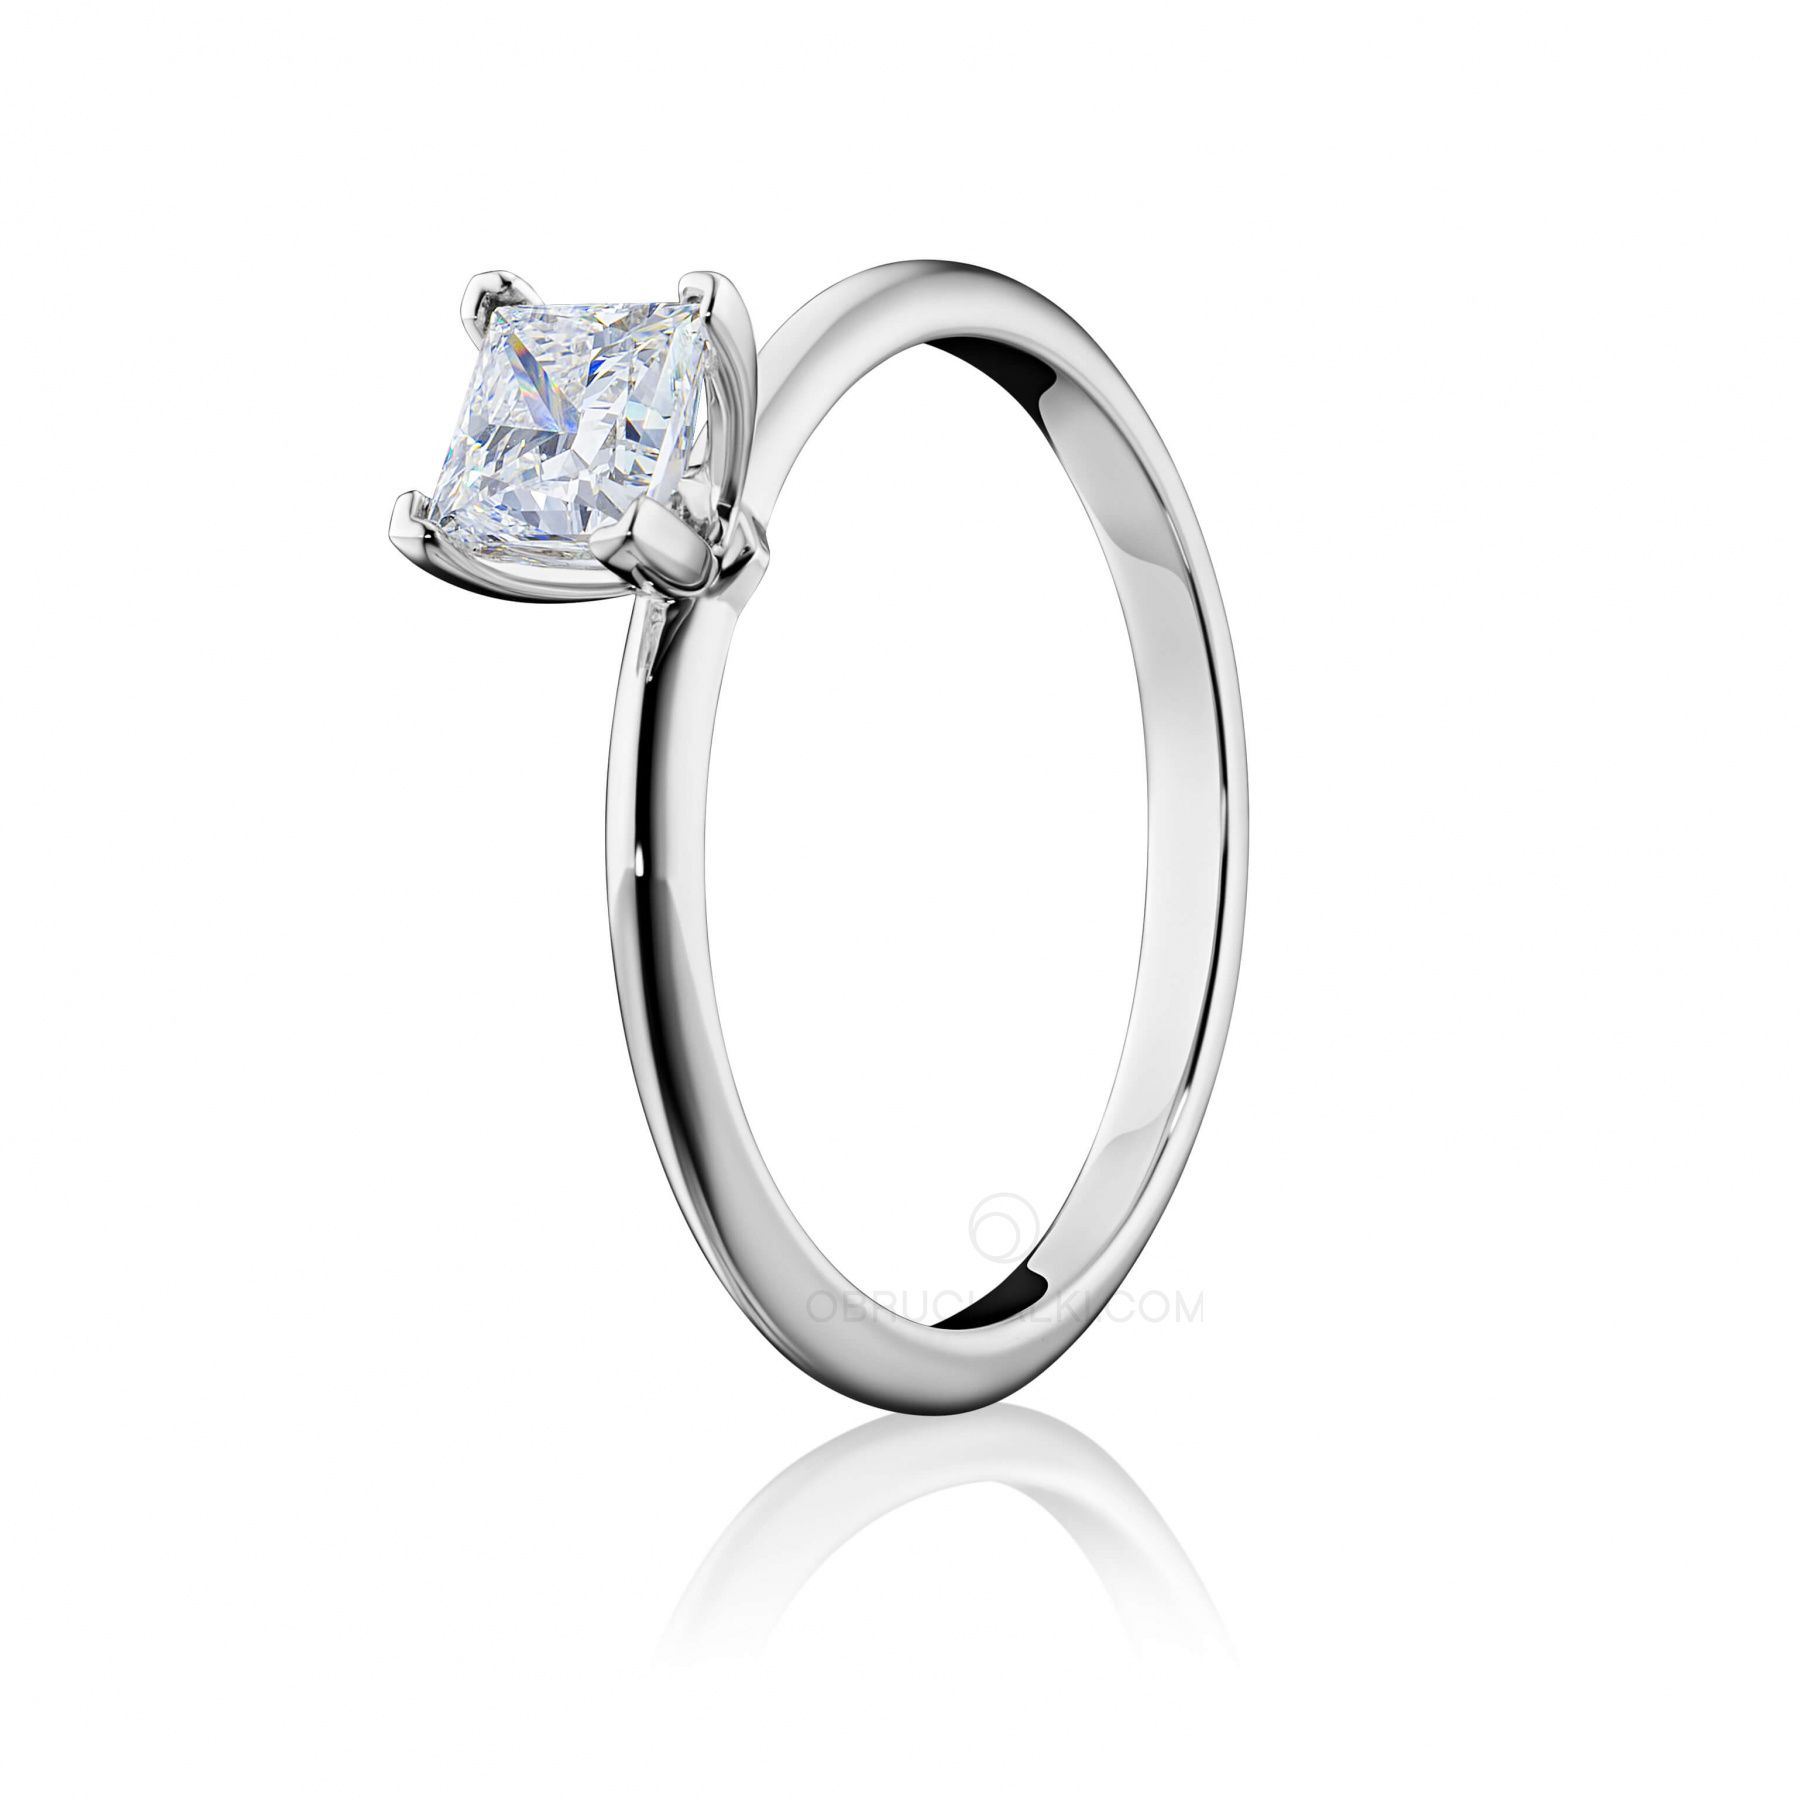 Помолвочное кольцо с квадратным бриллиантом принцесса LITTLE PRINCESS на заказ из белого и желтого золота, серебра, платины или своего металла